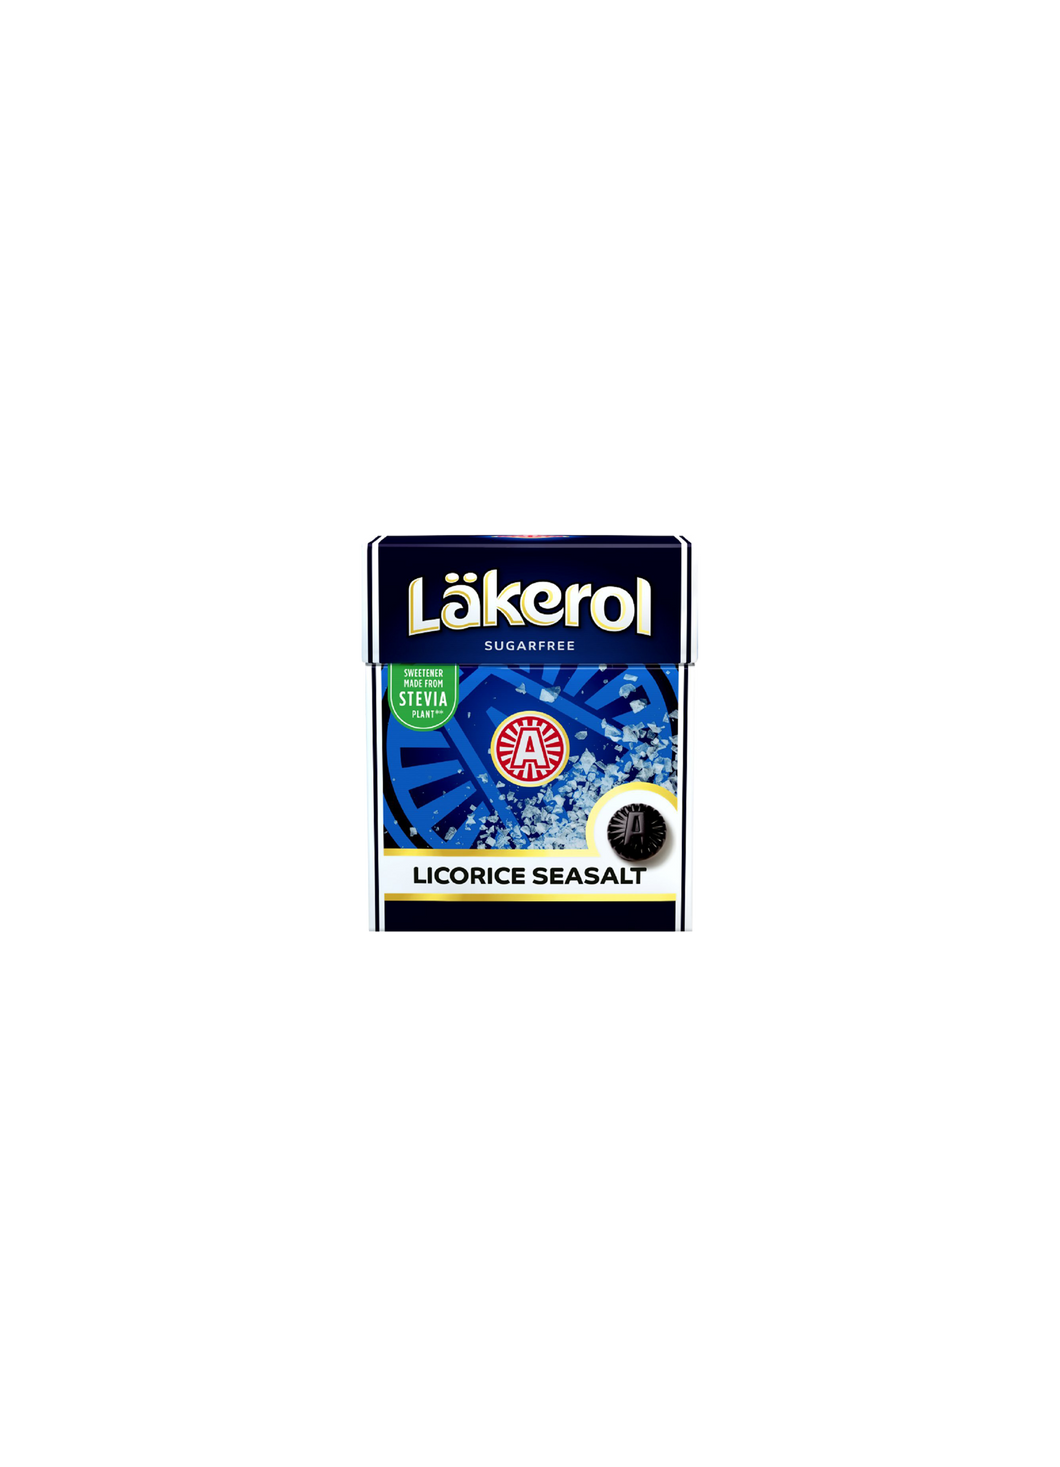 Lakerol Pastilles Licorice Seasalt Sugar Free 25g